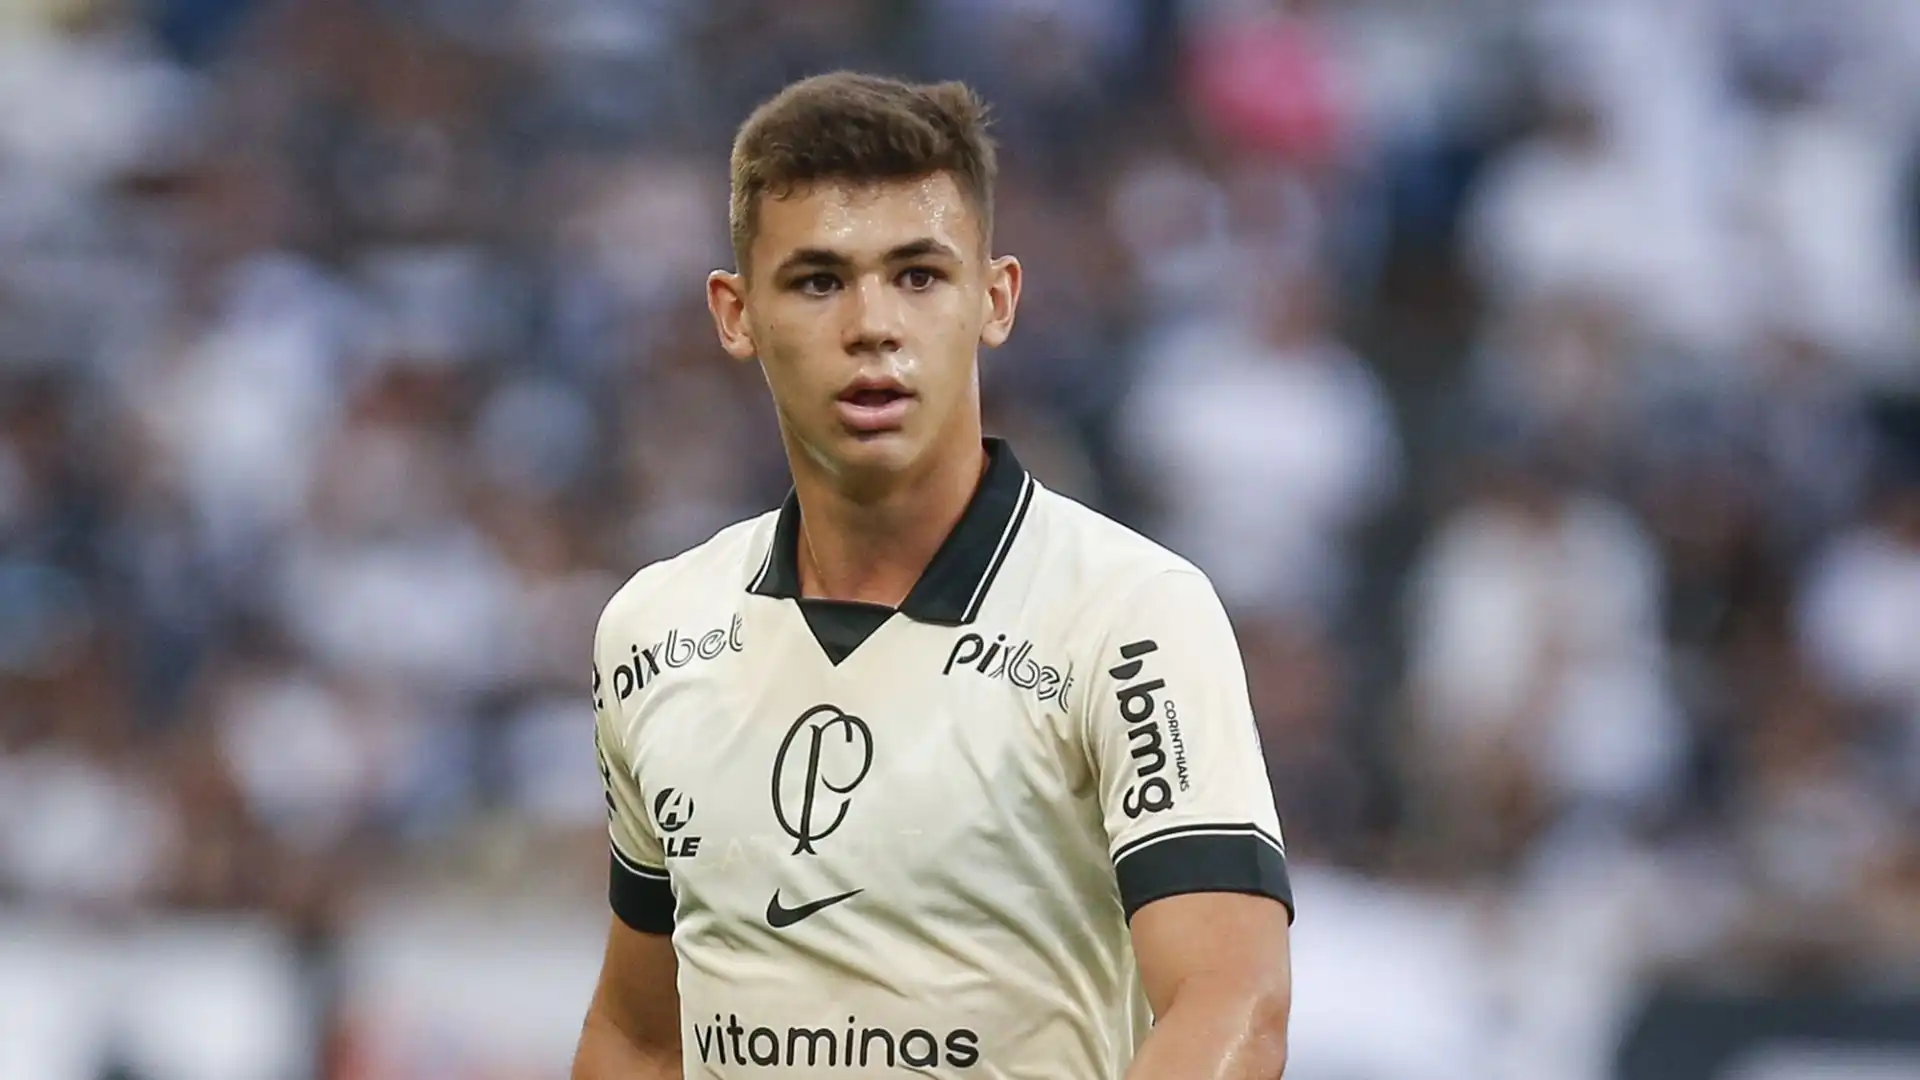 Moscardo ha fatto il suo debutto nella prima squadra del Corinthians lo scorso giugno, confermando le qualità esibite nei campionati giovanili